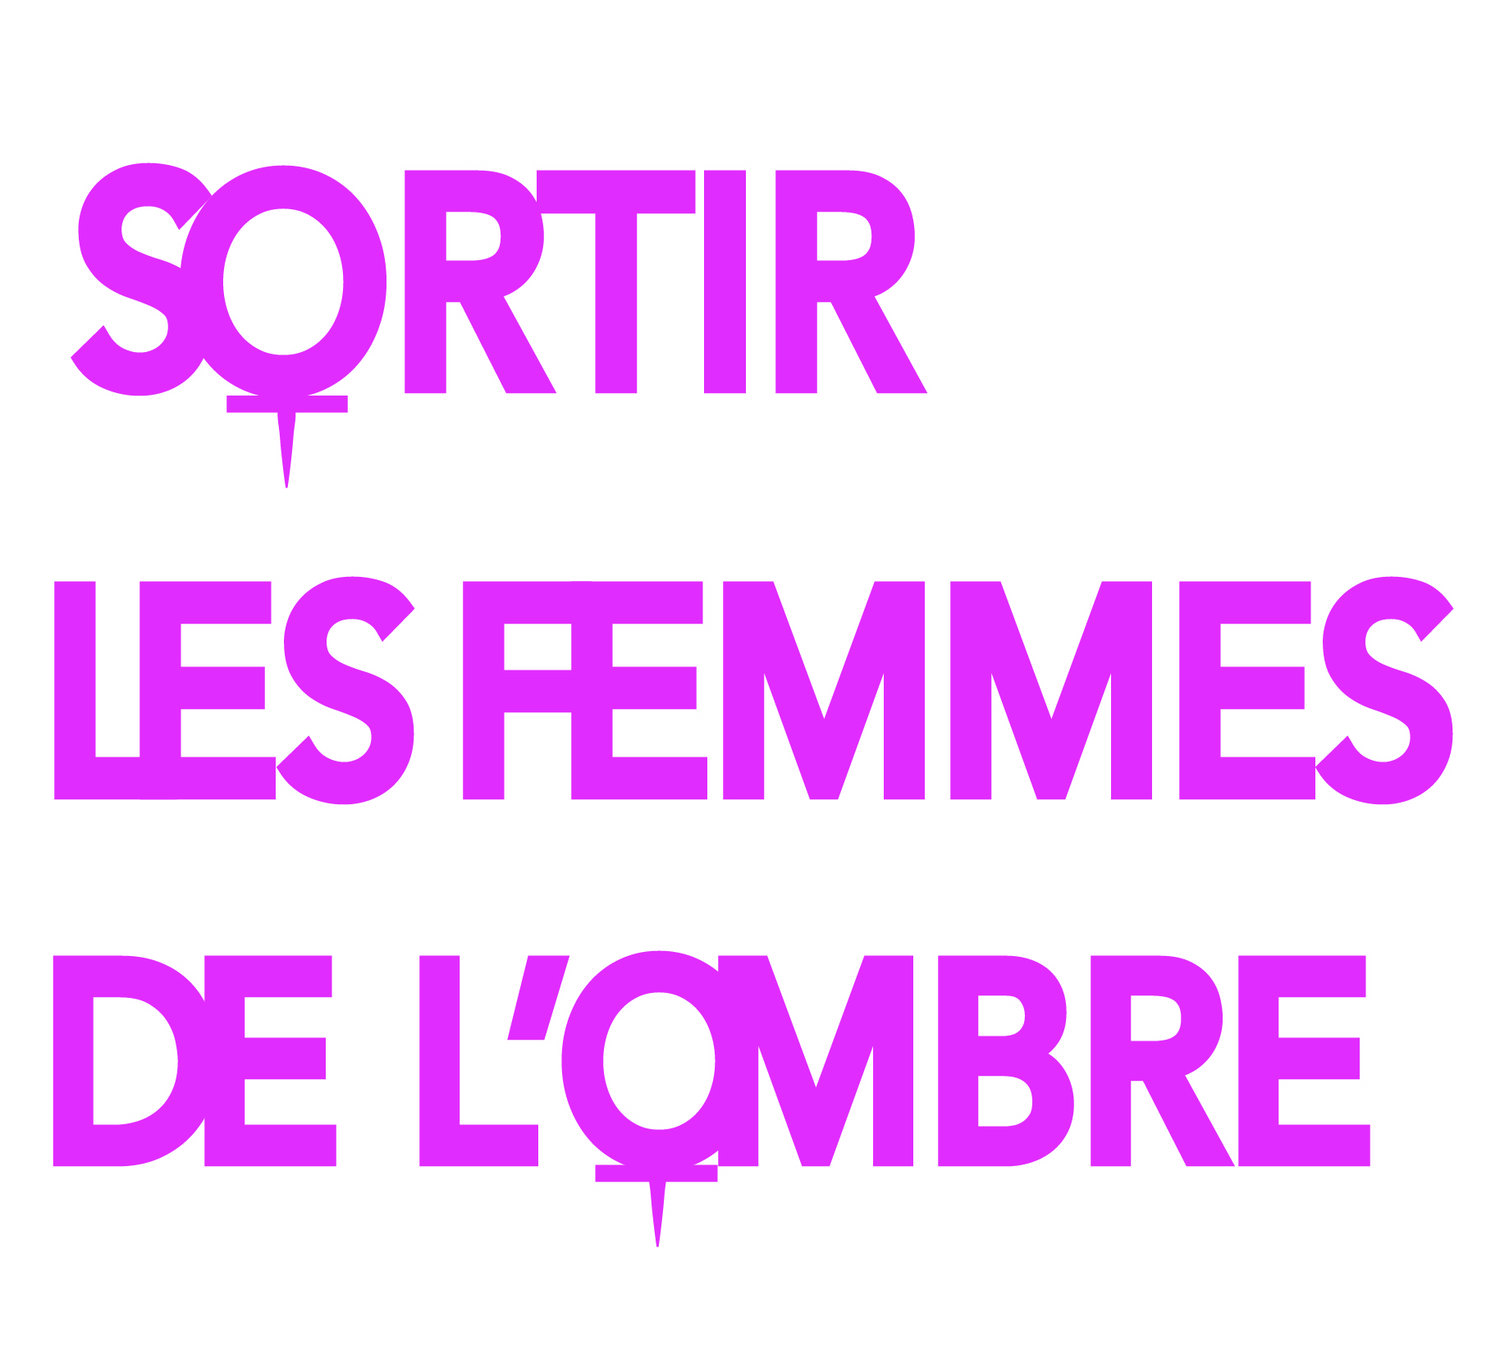 SORTIR LES FEMMES DE L'OMBRE